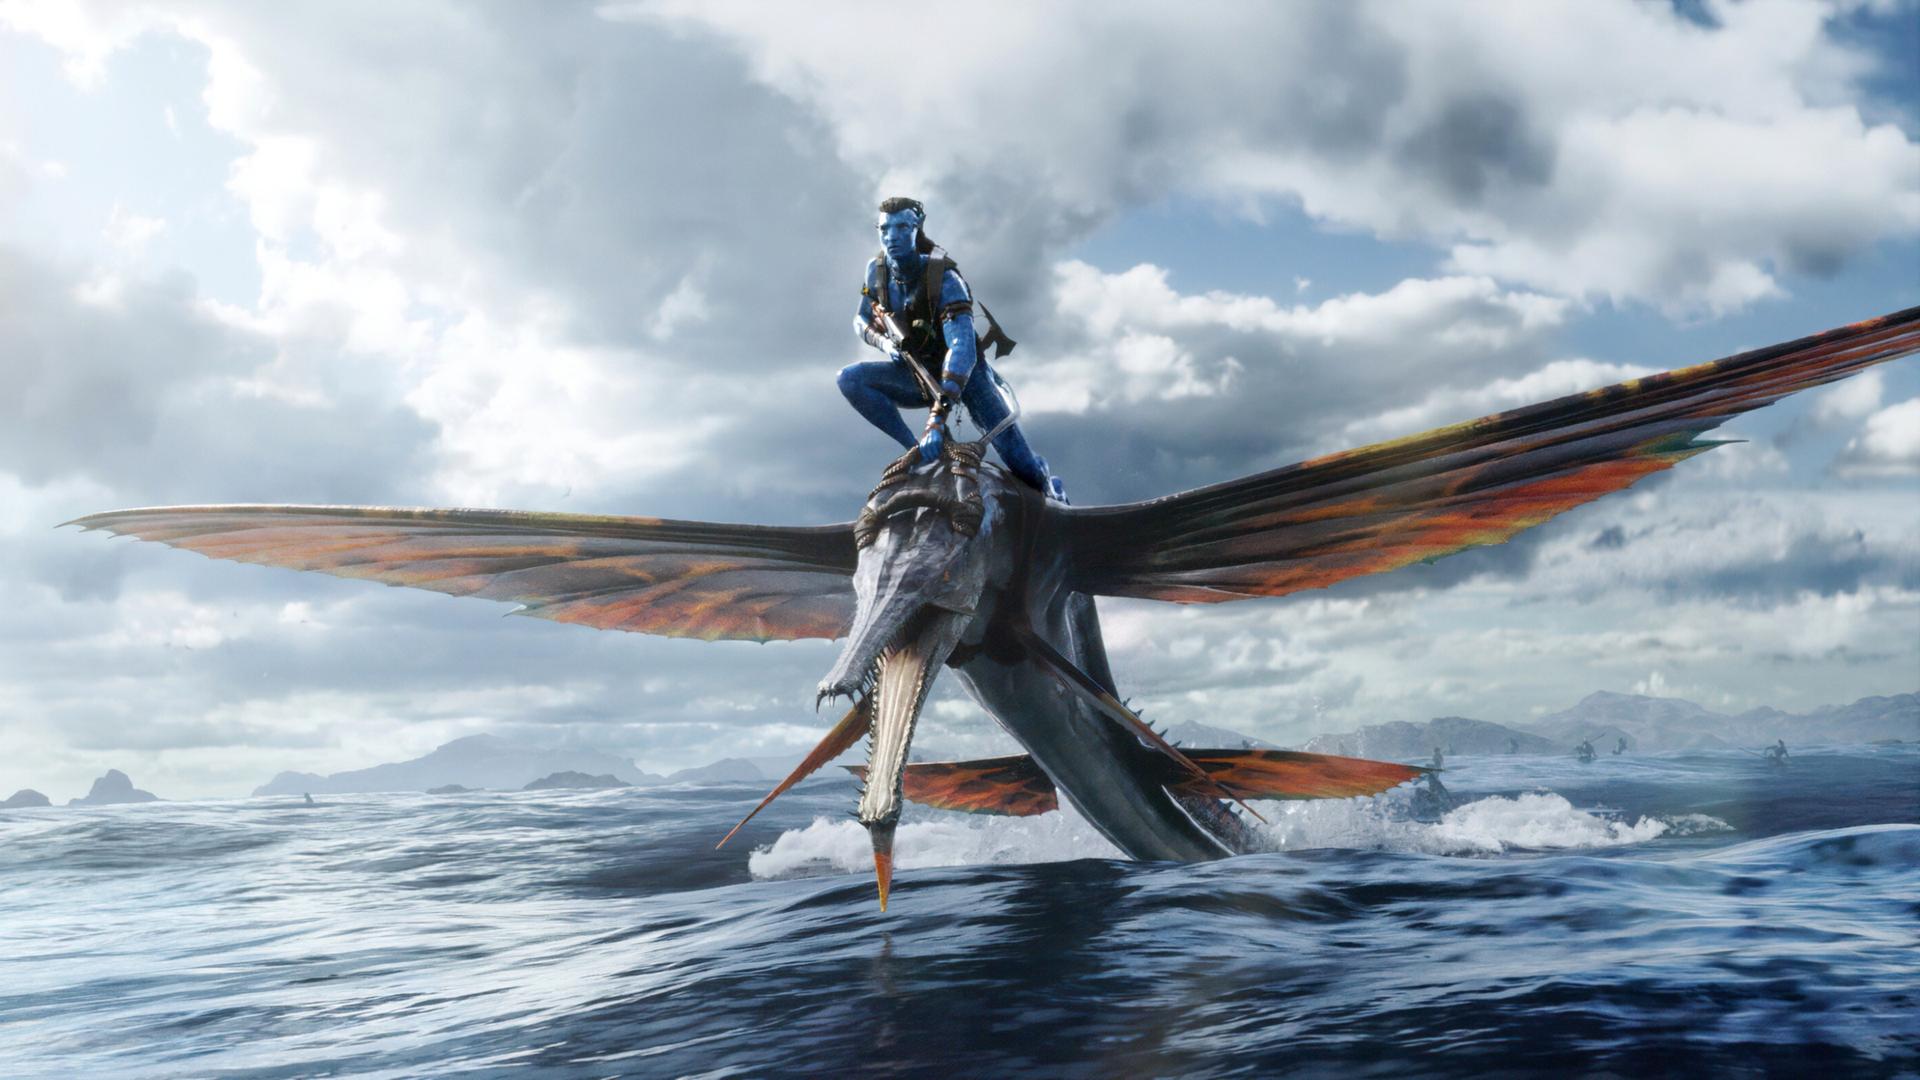 Ein Filmfoto aus James Camerons Fantasyfilm "Avatar: The Way of Water". Ein Angehöriger des Na'vi-Volkes reitet auf einem flugsauierähnlichen großen Tier über das Wasser. Die Na'vi haben blaue Haut und lange Haare.